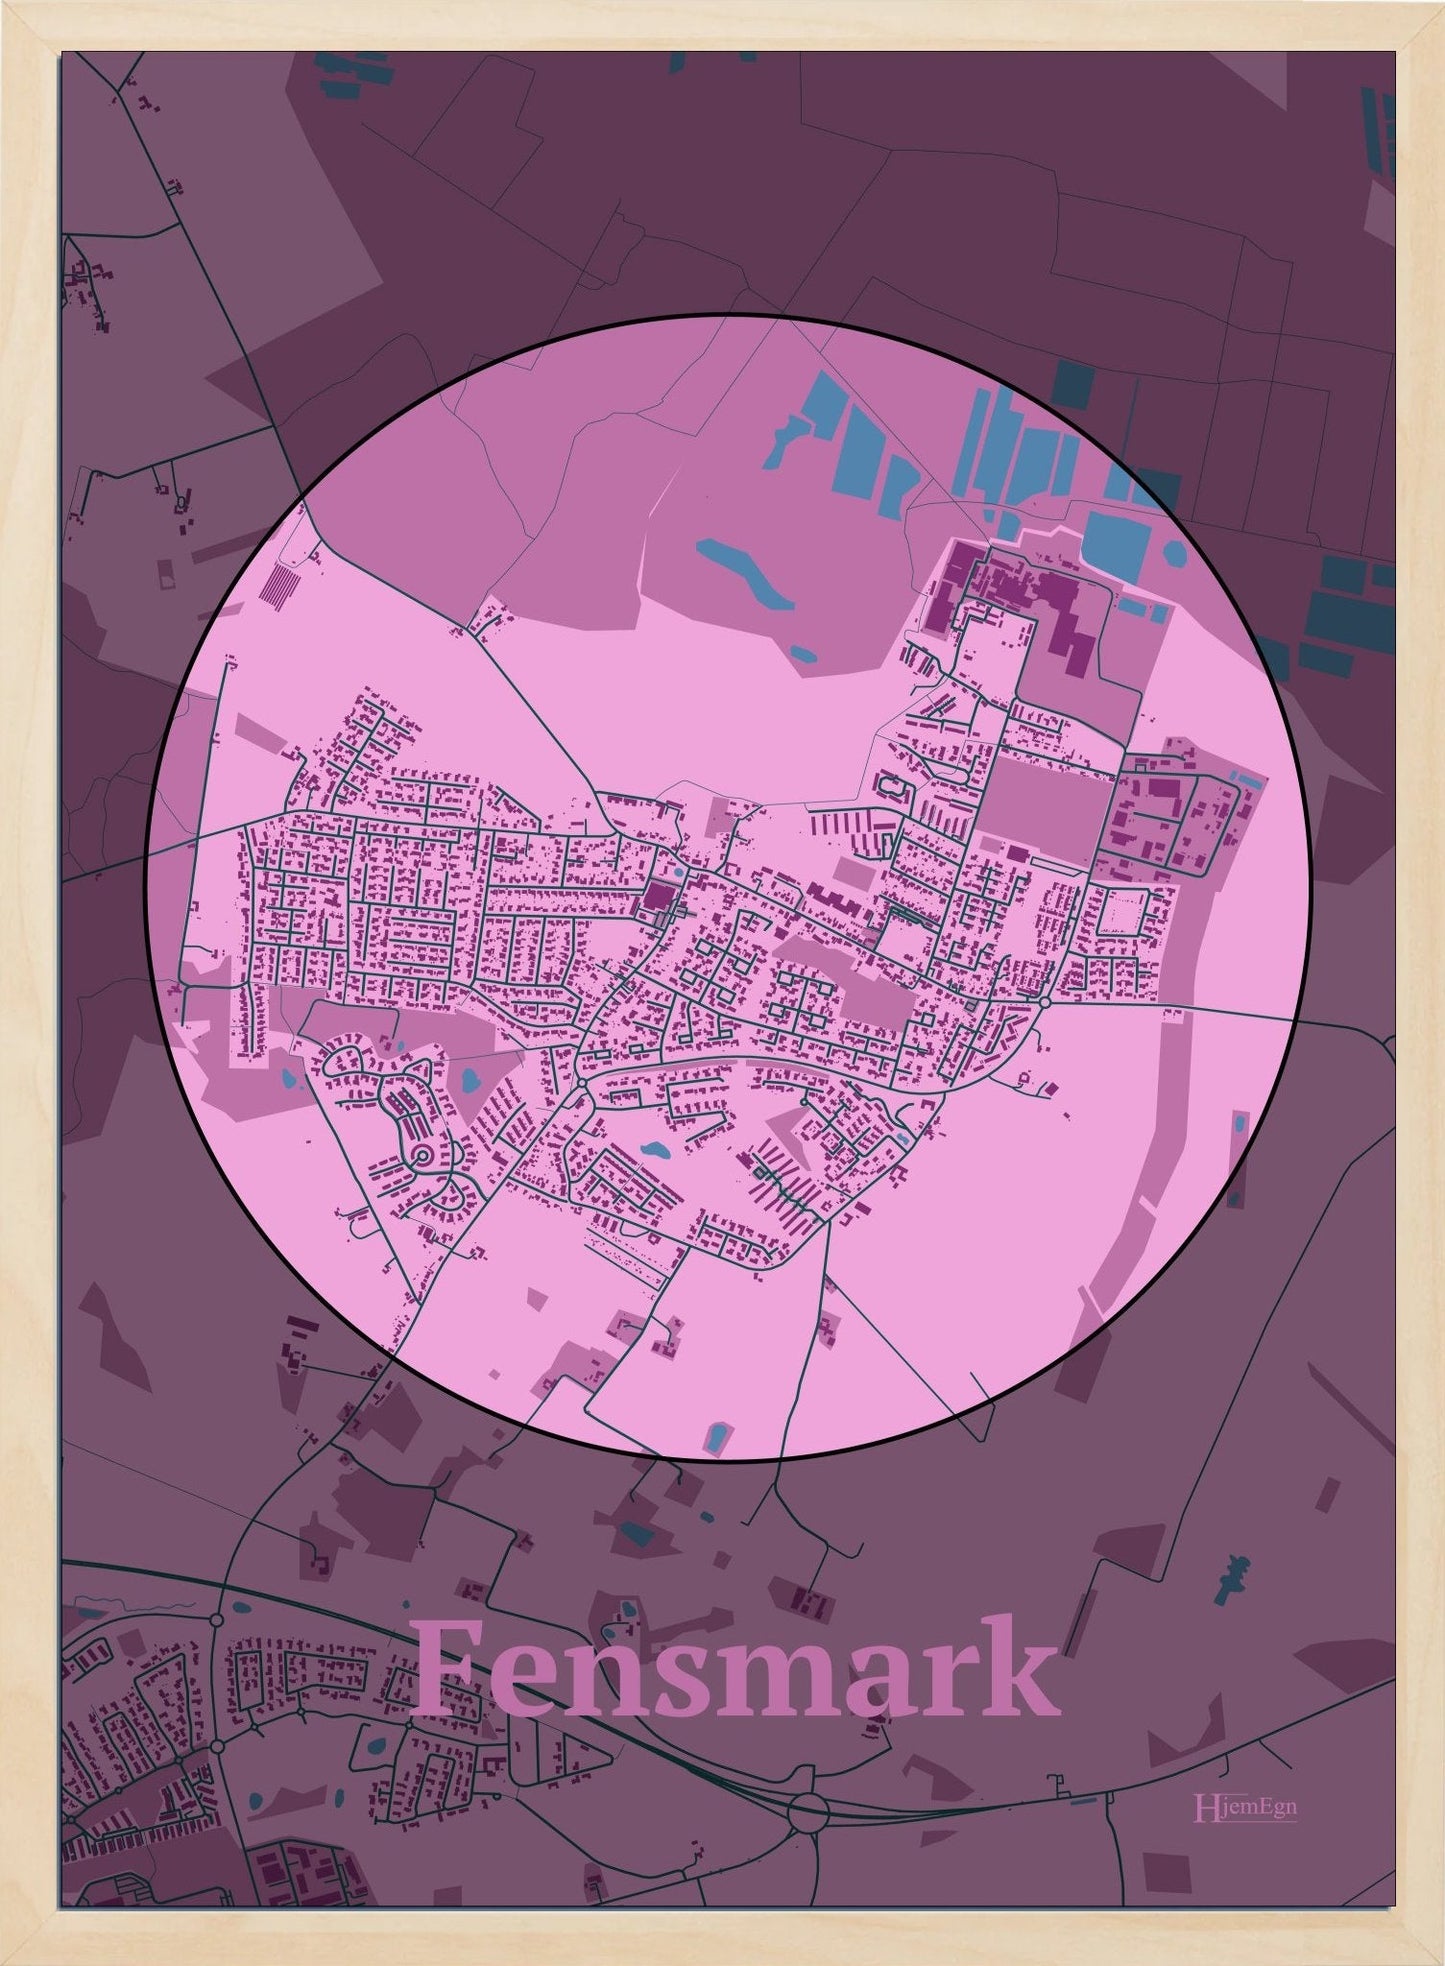 Fensmark plakat i farve pastel rød og HjemEgn.dk design centrum. Design bykort for Fensmark